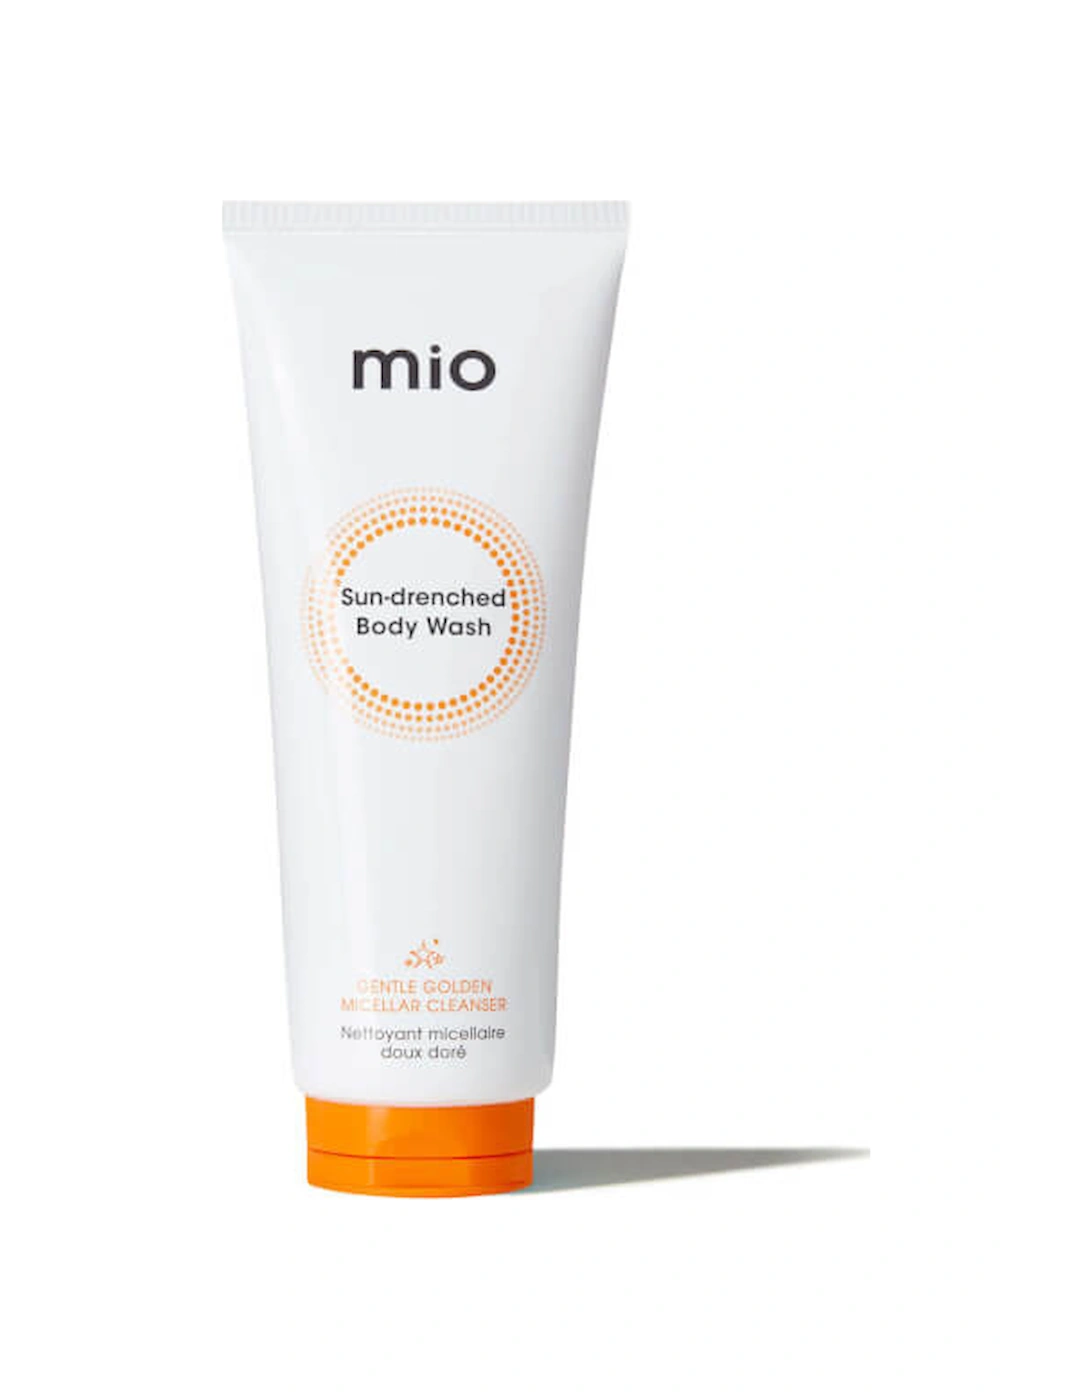 mio Sun-Drenched Body Wash 200ml - Mio Skincare, 2 of 1